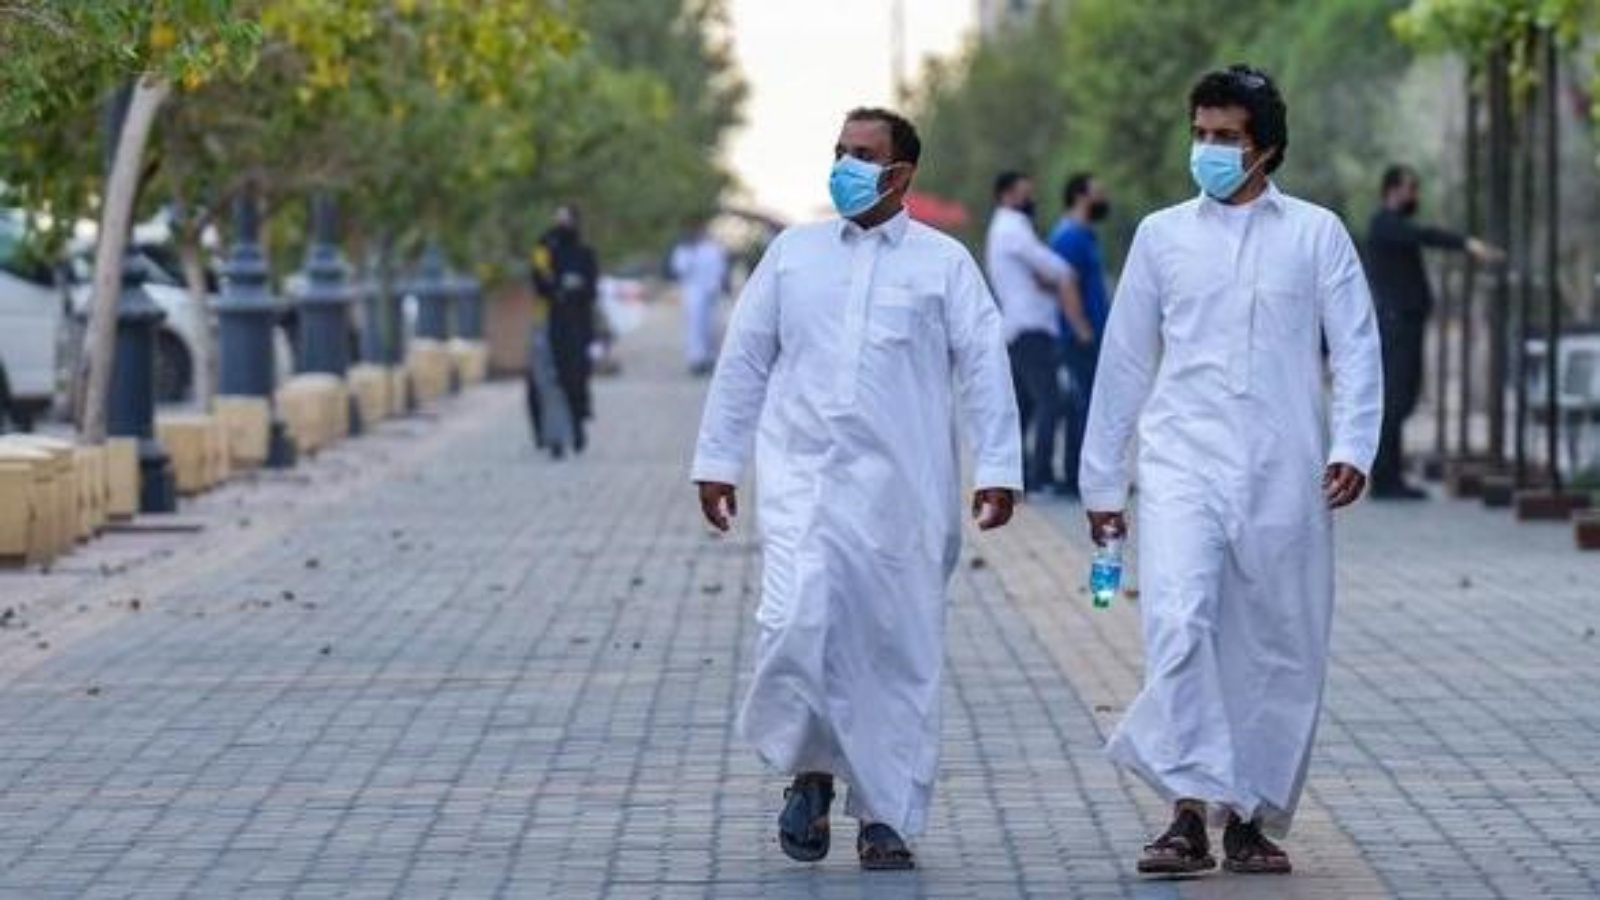  شابان ملتزمان بالإجراءات الصحية في أحد شوارع الرياض